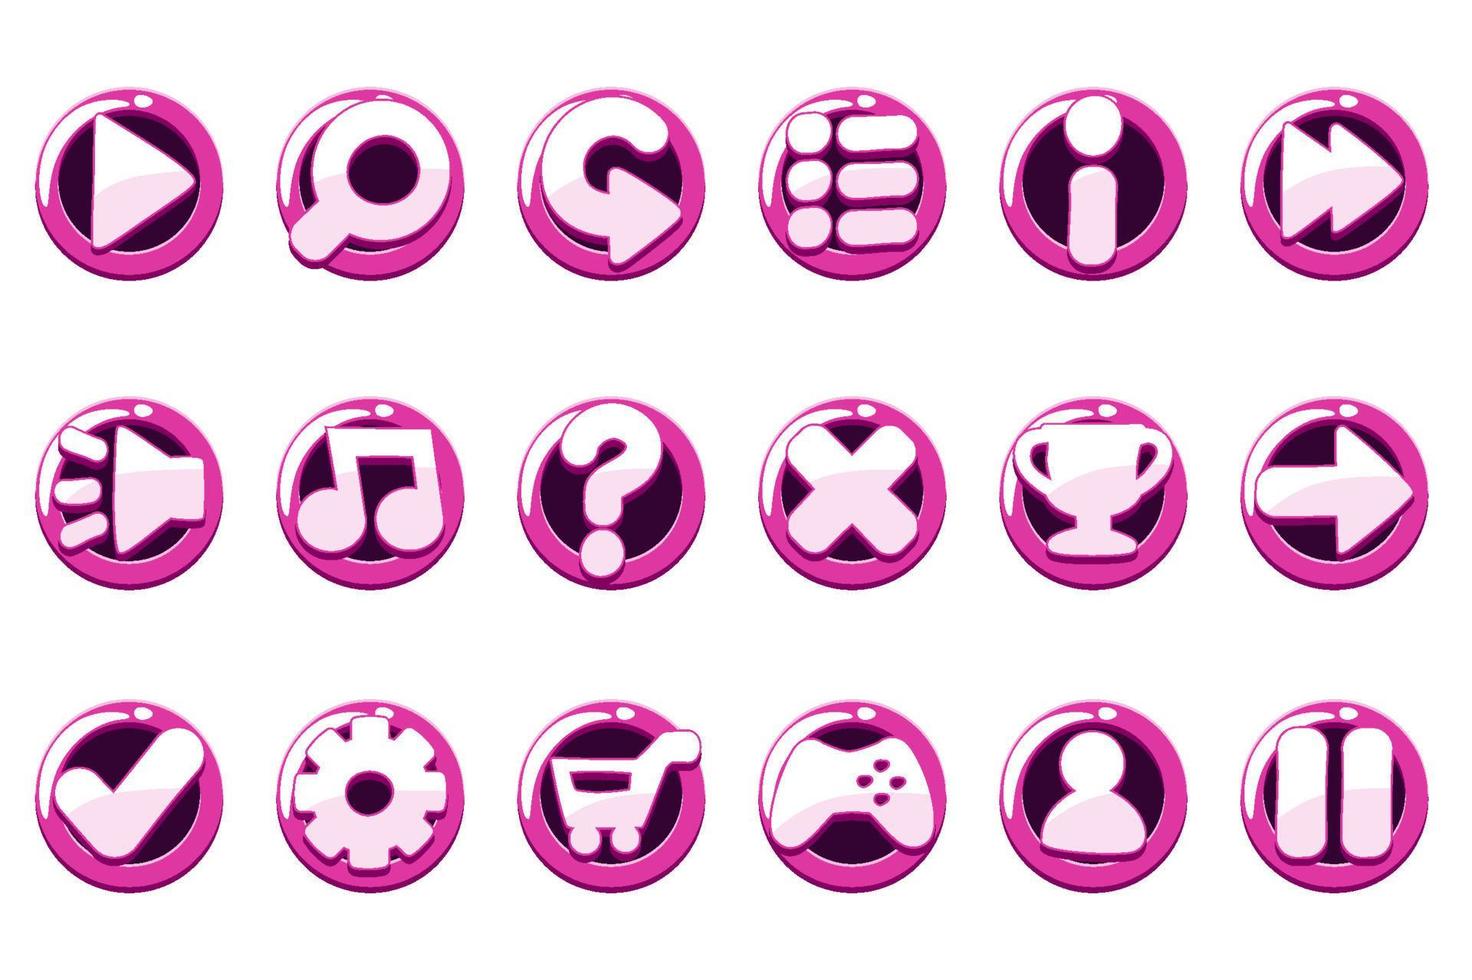 conjunto de botones de juego de color púrpura brillante para la interfaz. iconos redondos para sitio web o interfaz. vector